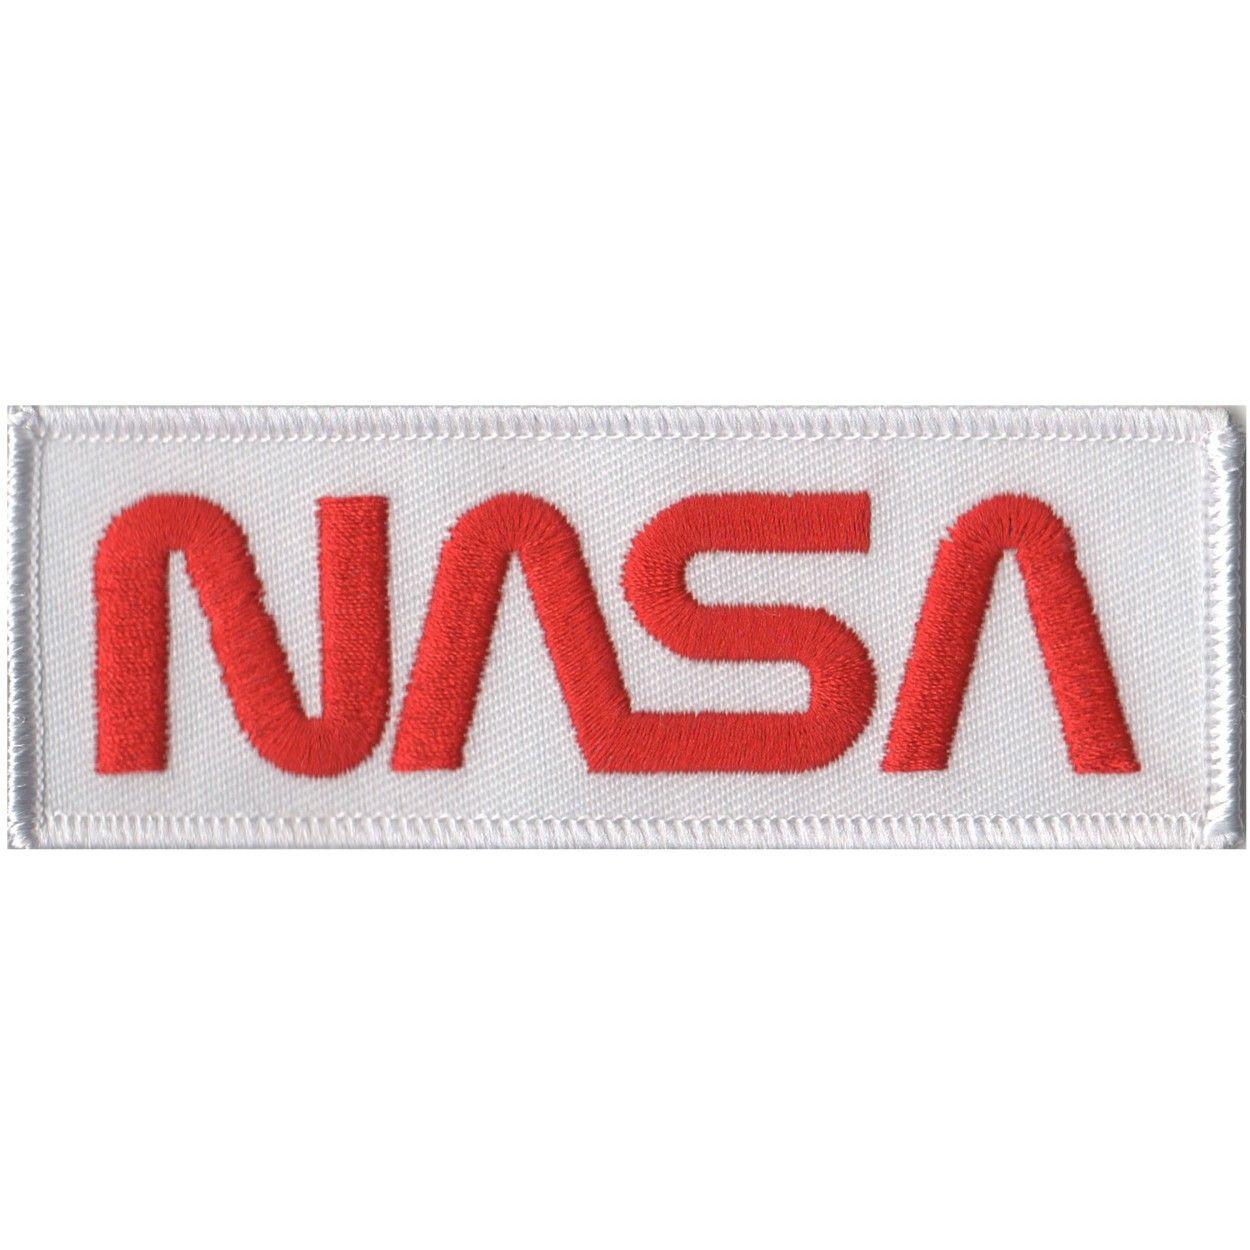 White NASA Logo - White & Red NASA Worm Logo Patch